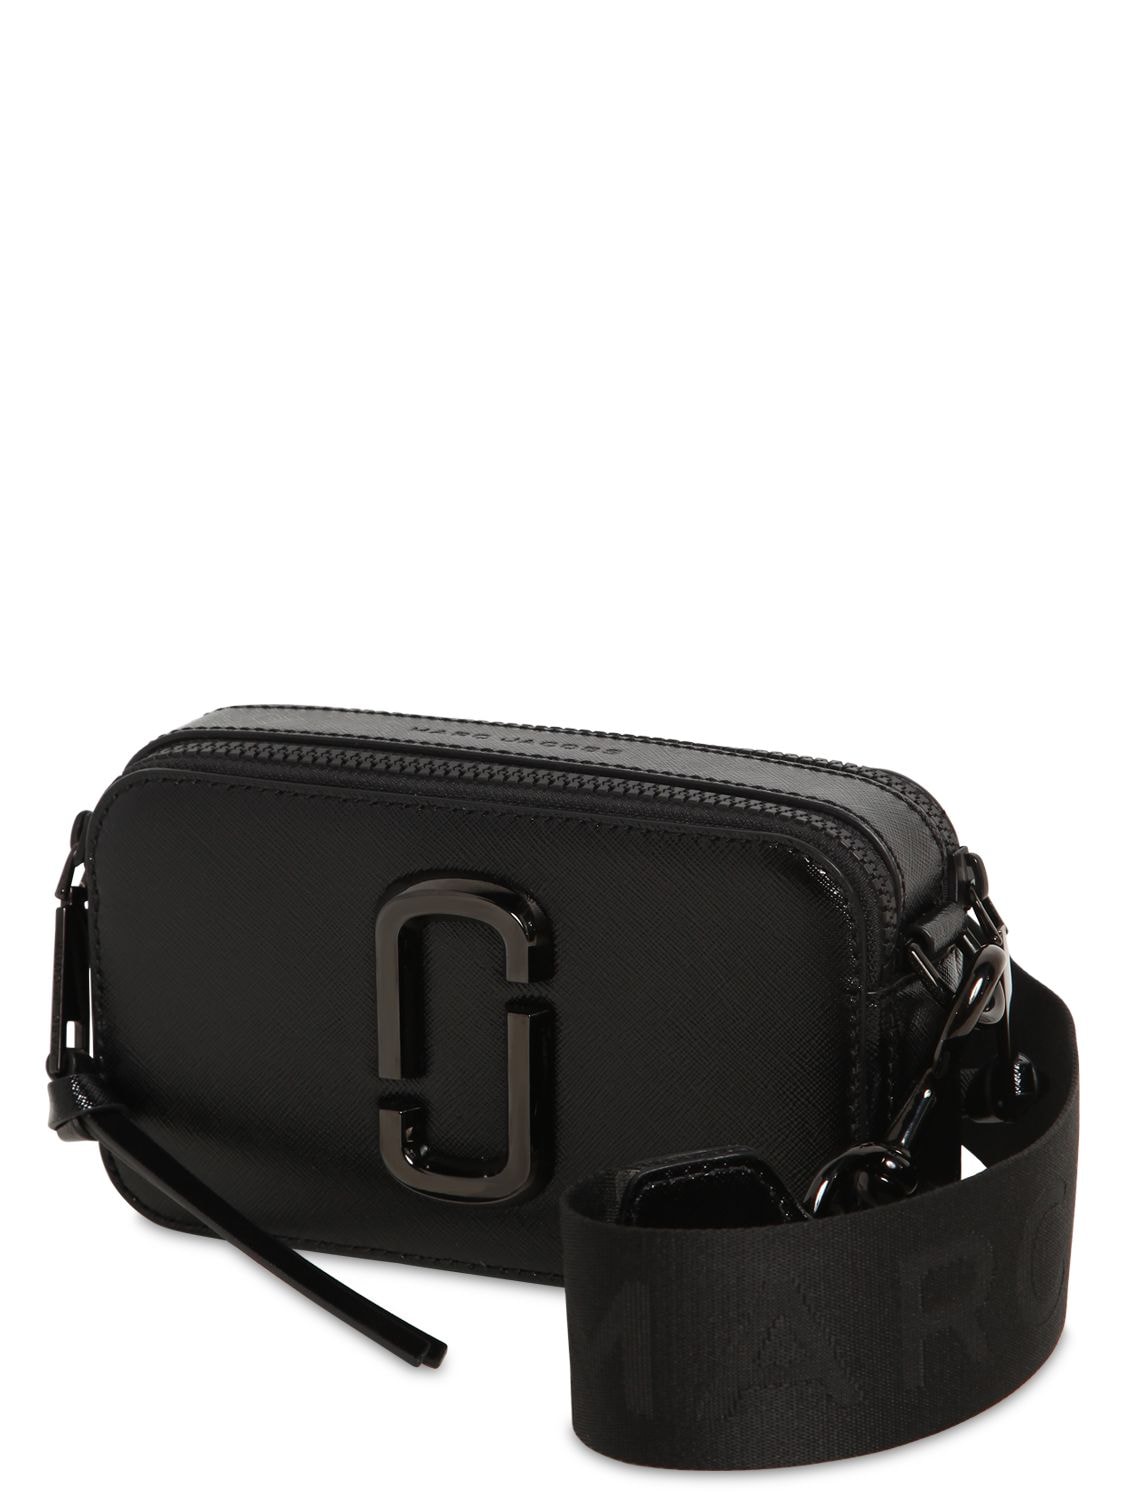 Marc Jacobs The Snapshot Dtm Leather Shoulder Bag In Black